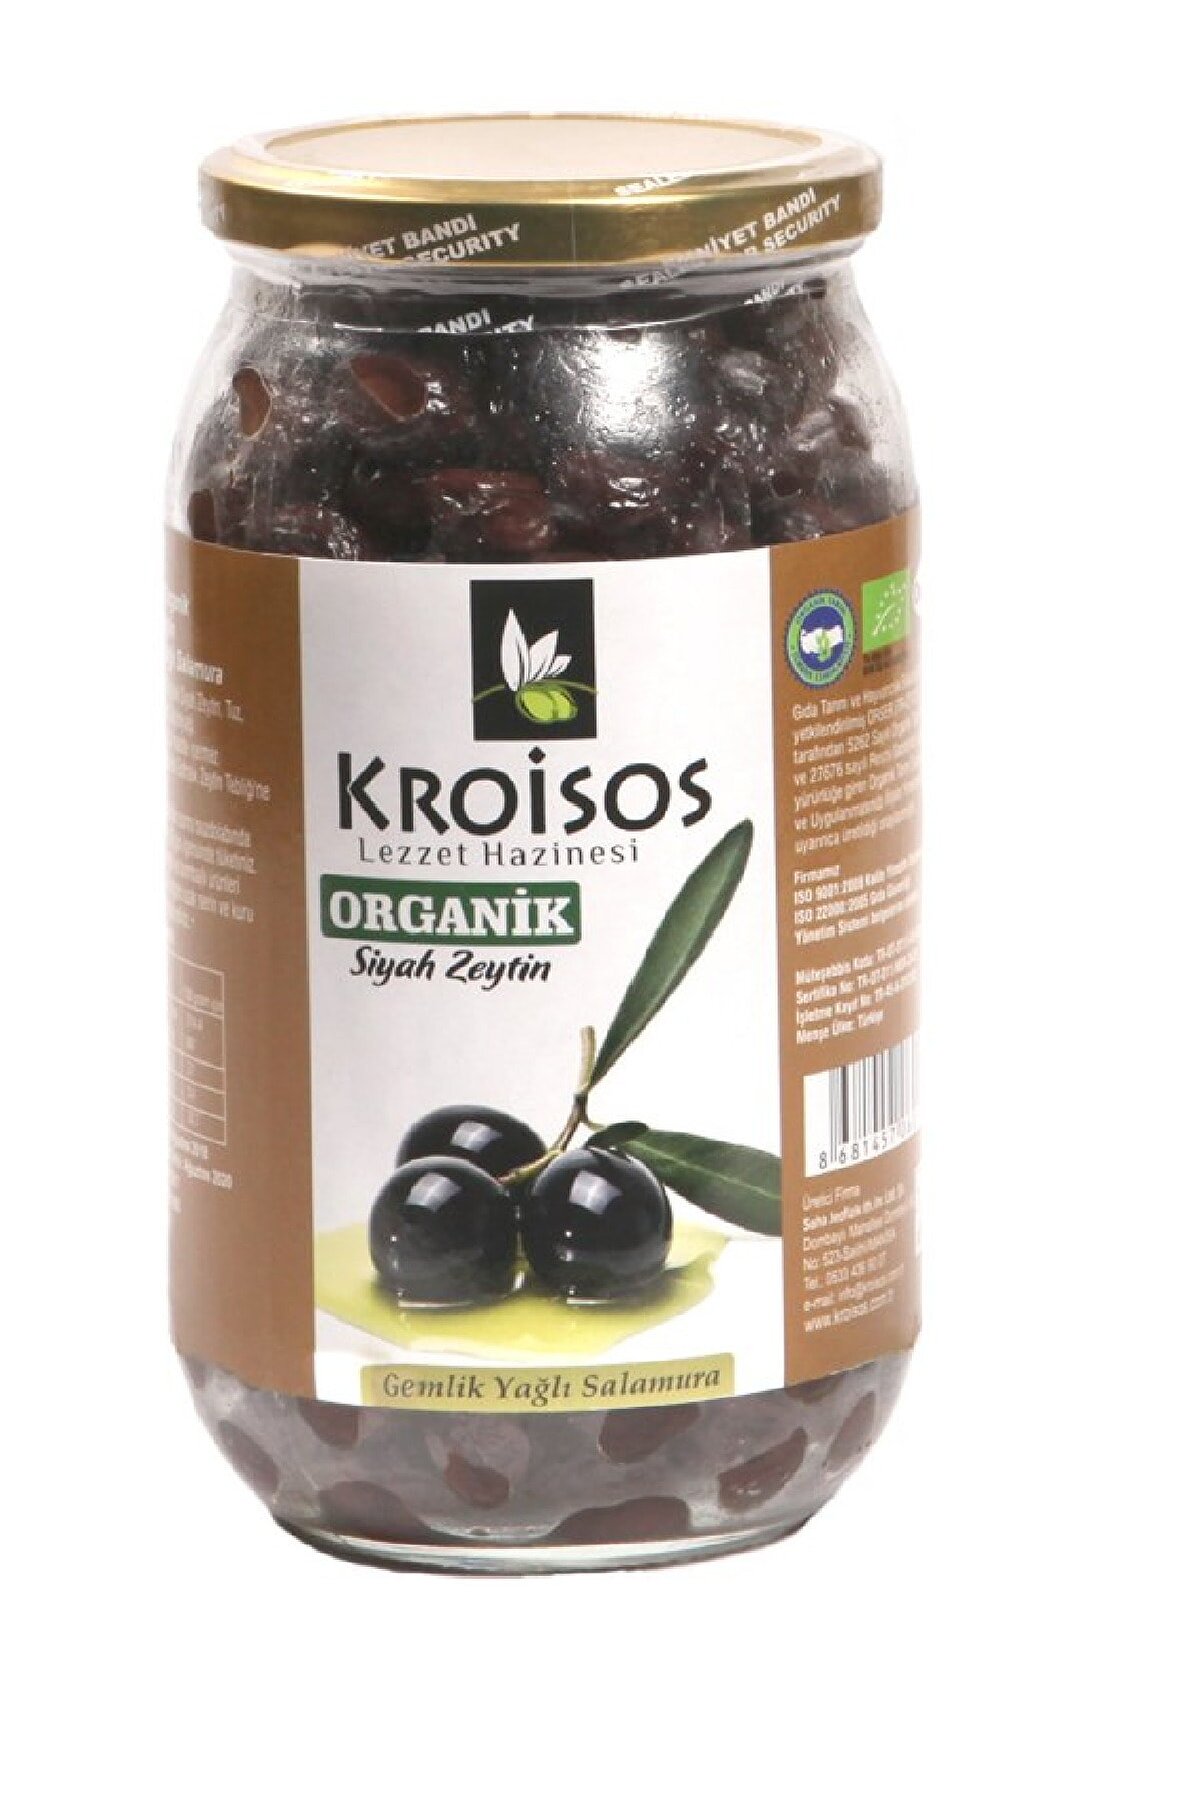 Kroisos Organik Siyah Zeytin (gemlik Yağlı Salamura) 700gr